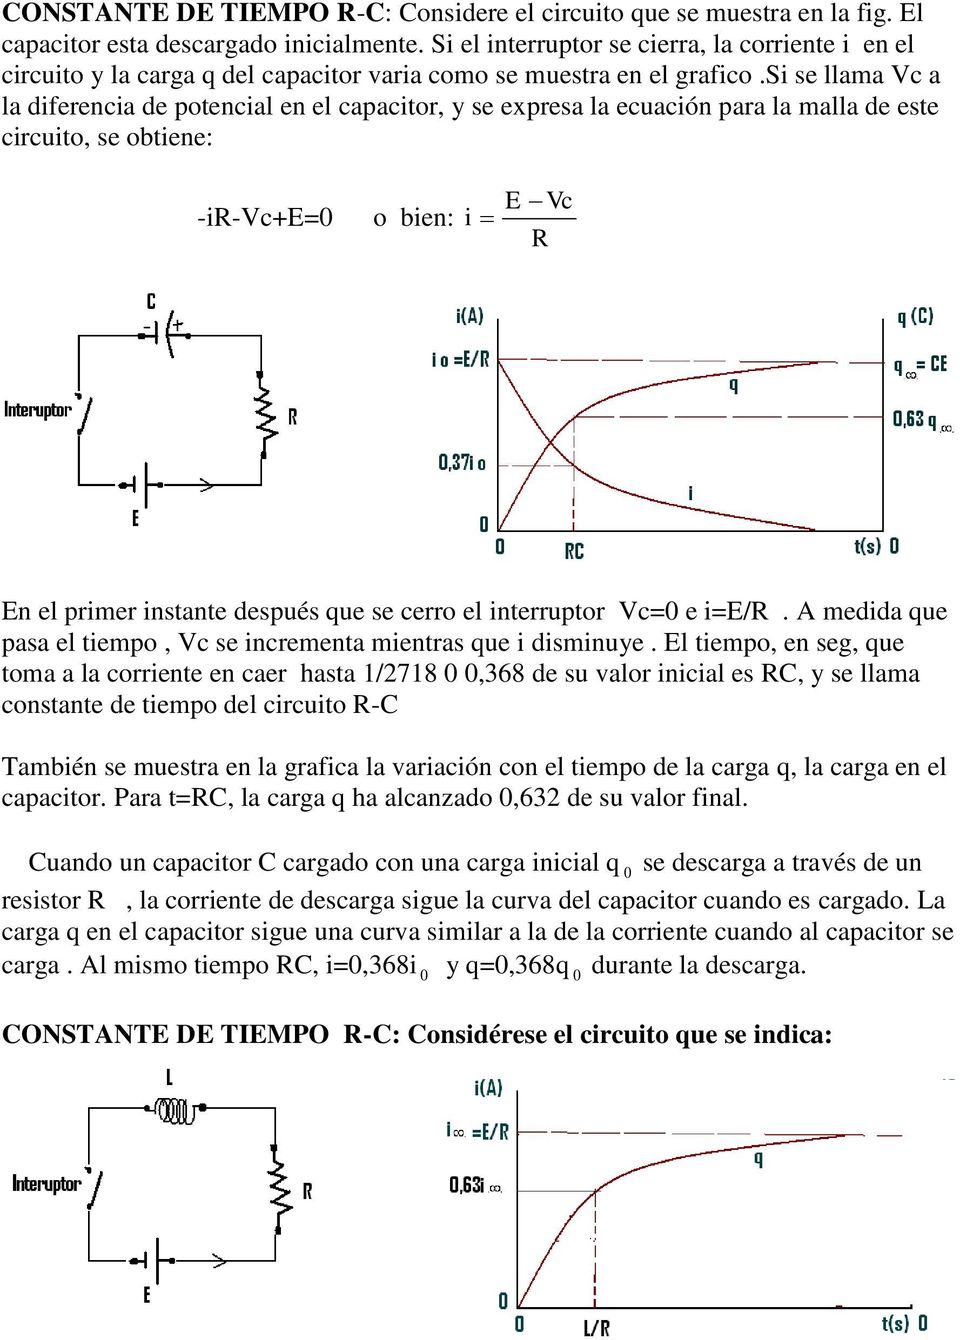 s se llama Vc a la dferenca de poencal en el capacor, y se expresa la ecuacón para la malla de ese crcuo, se obene: -R-Vc+E= o ben: E Vc R En el prmer nsane después que se cerro el nerrupor Vc= e